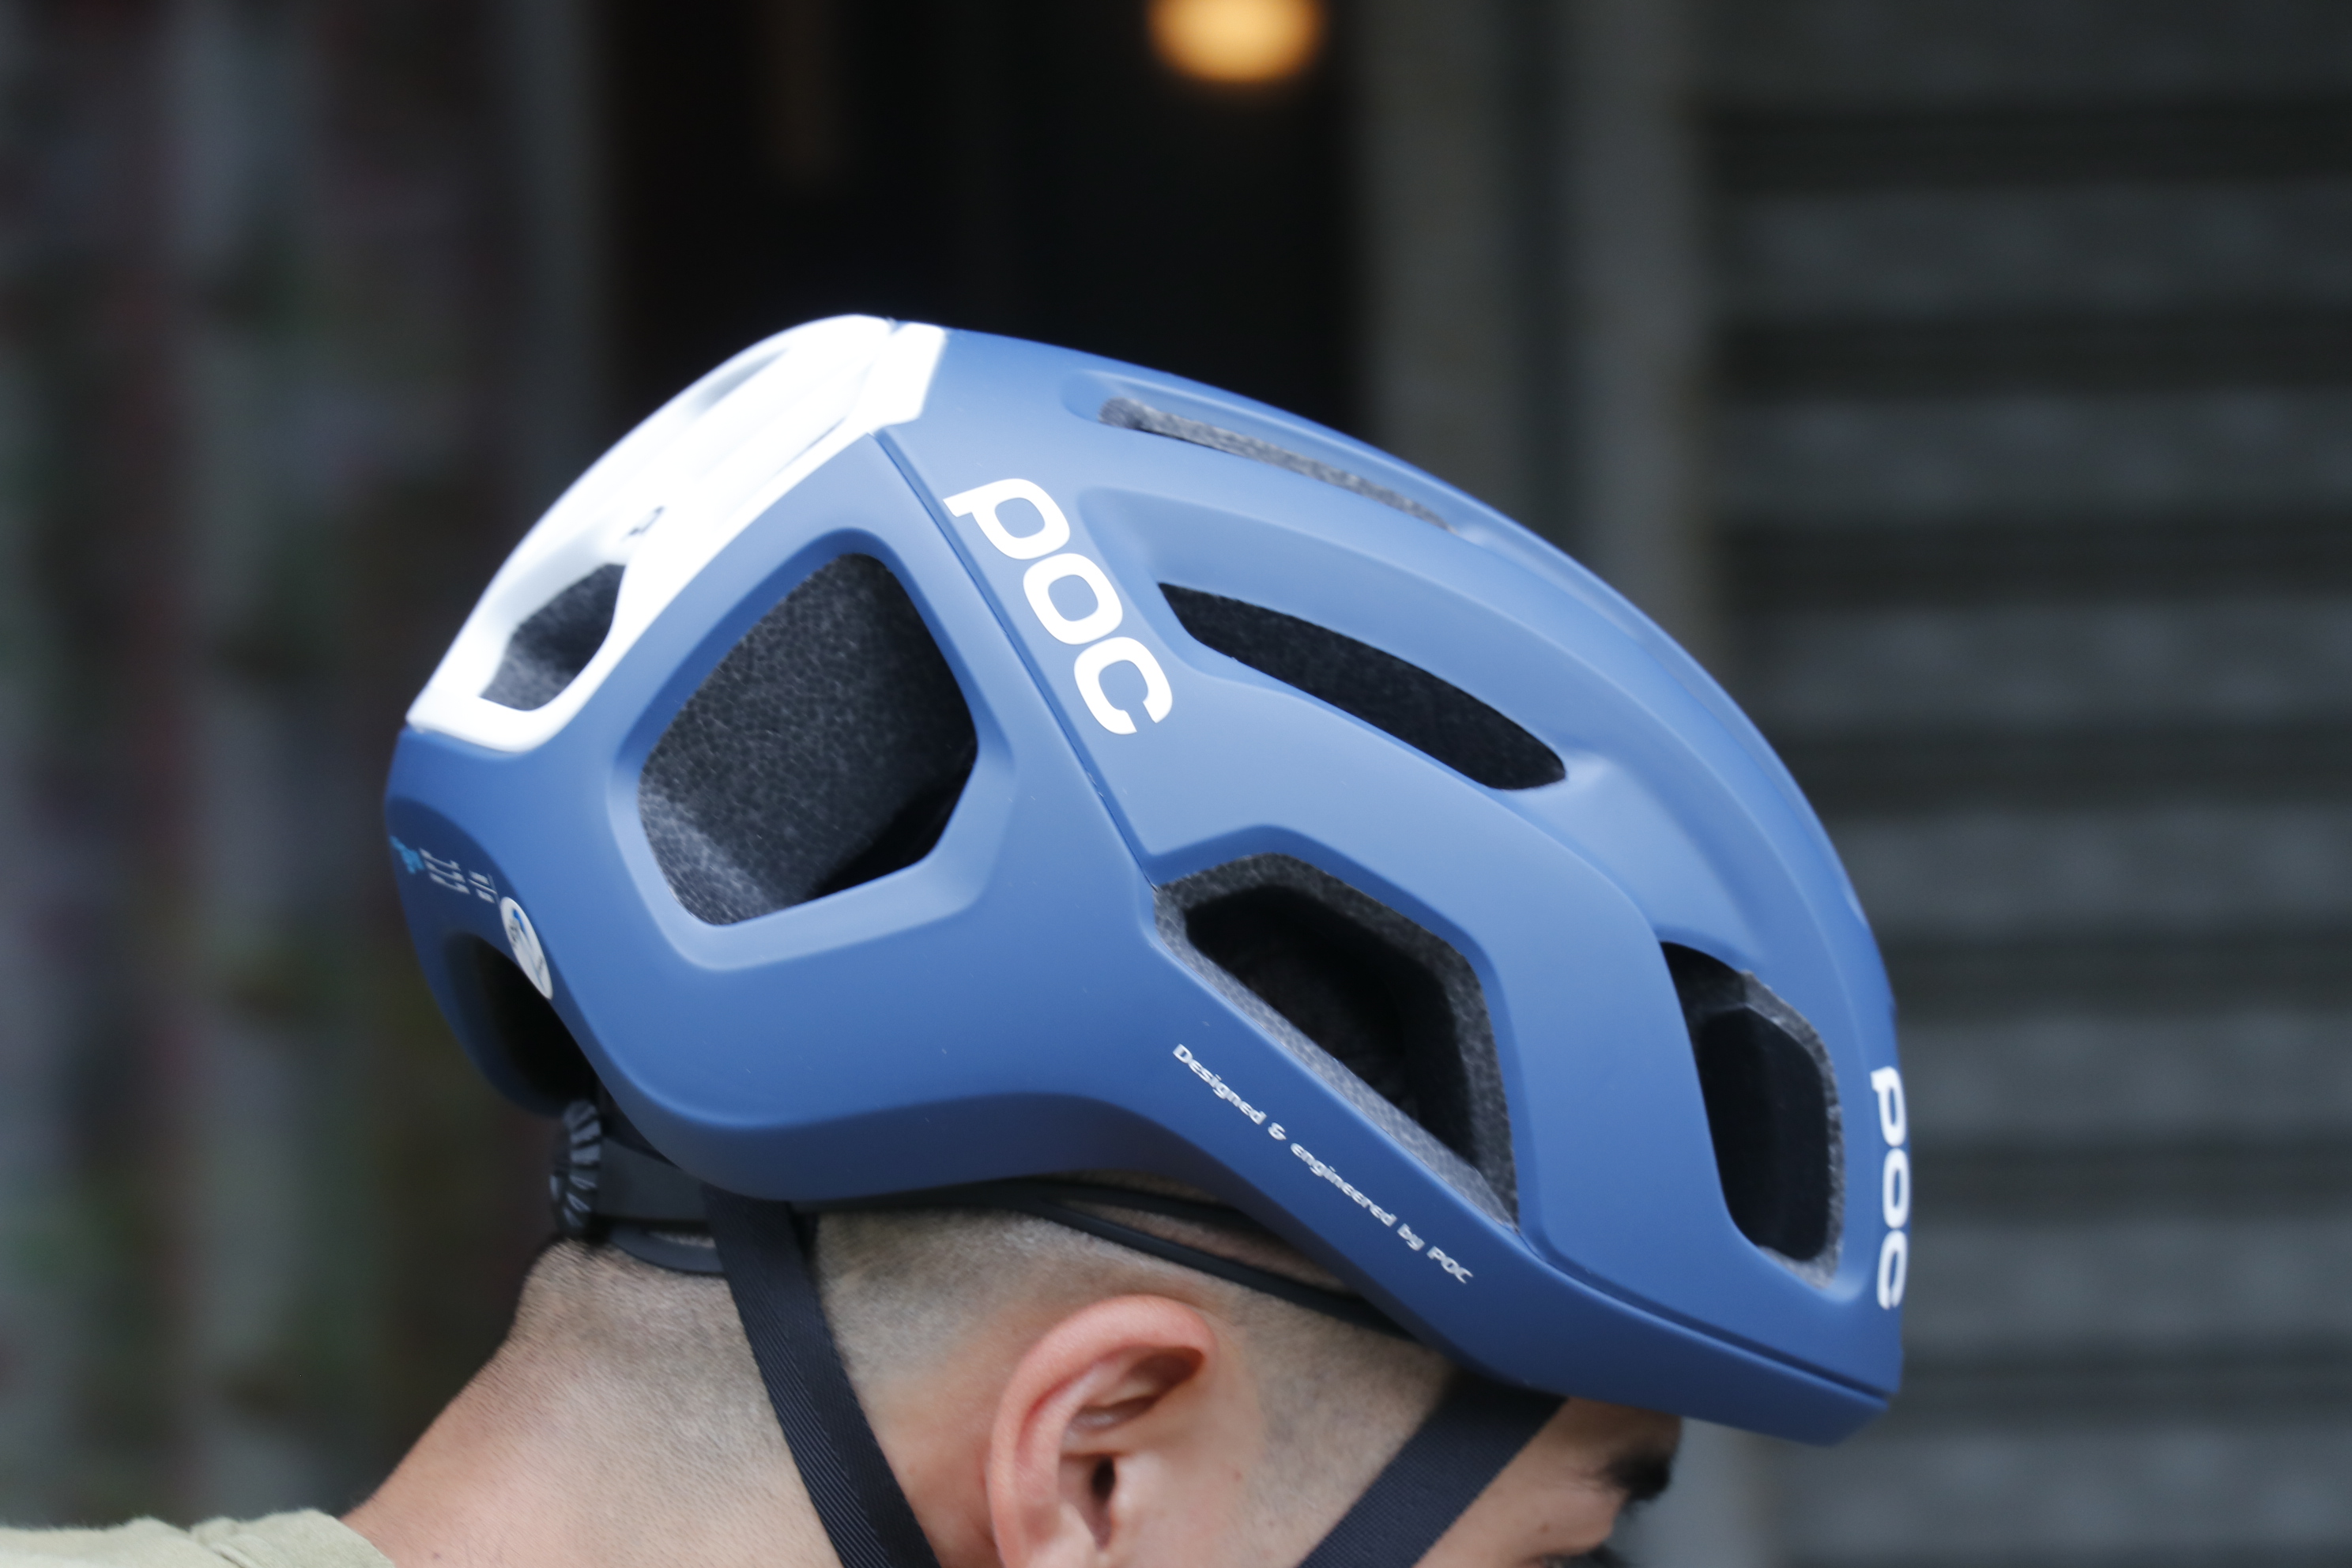 BLOG 【 POC / ポック 】の最新ヘルメット【 Ventral Air Spin / ベントラル エアー スピン 】から新色が入荷し